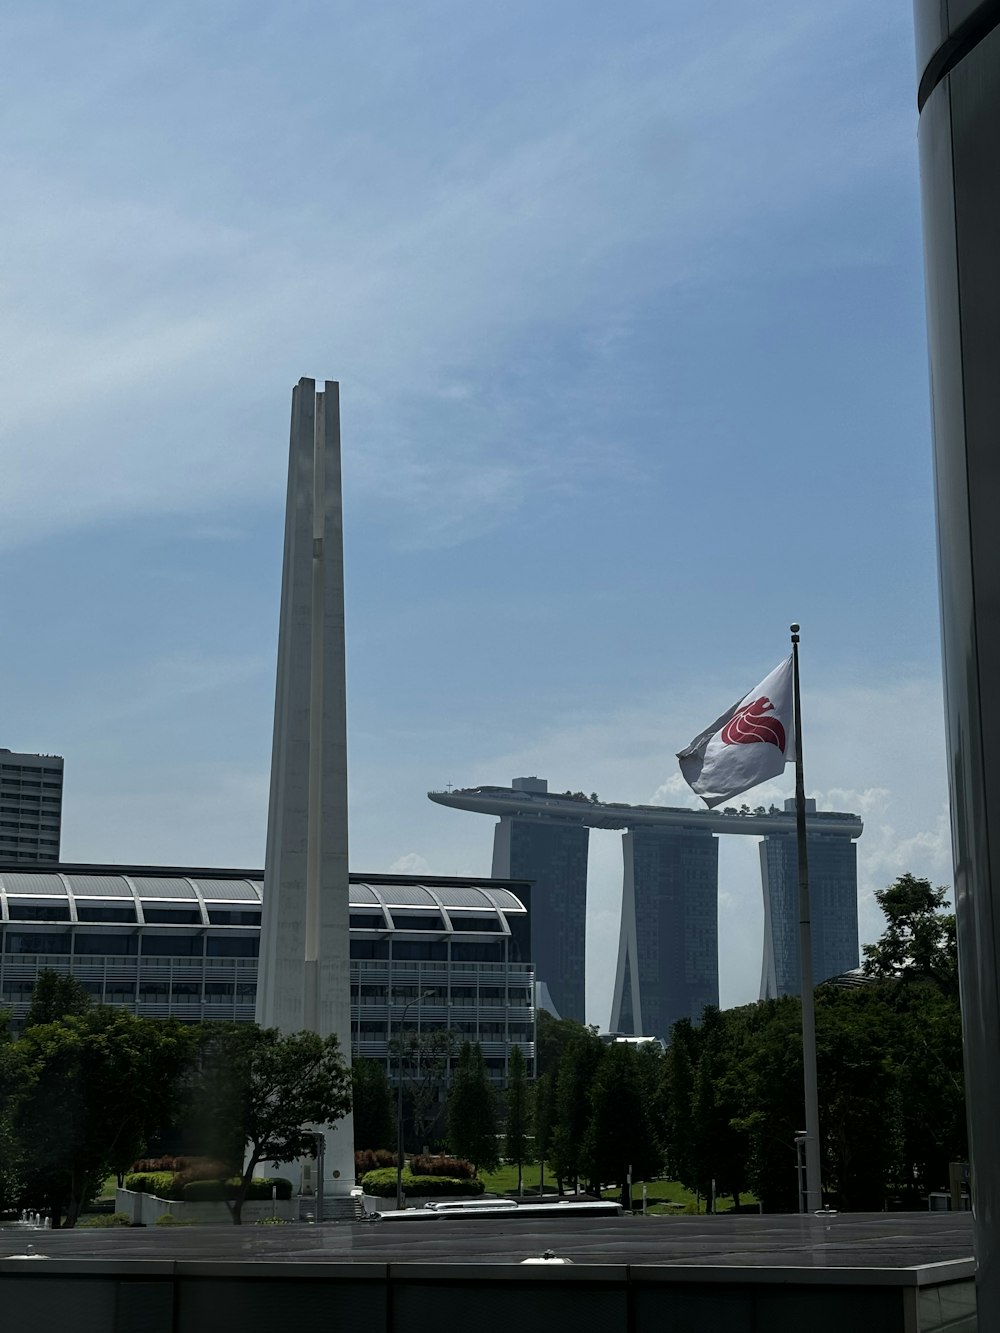 Una vista de un edificio muy alto con una bandera ondeando frente a él